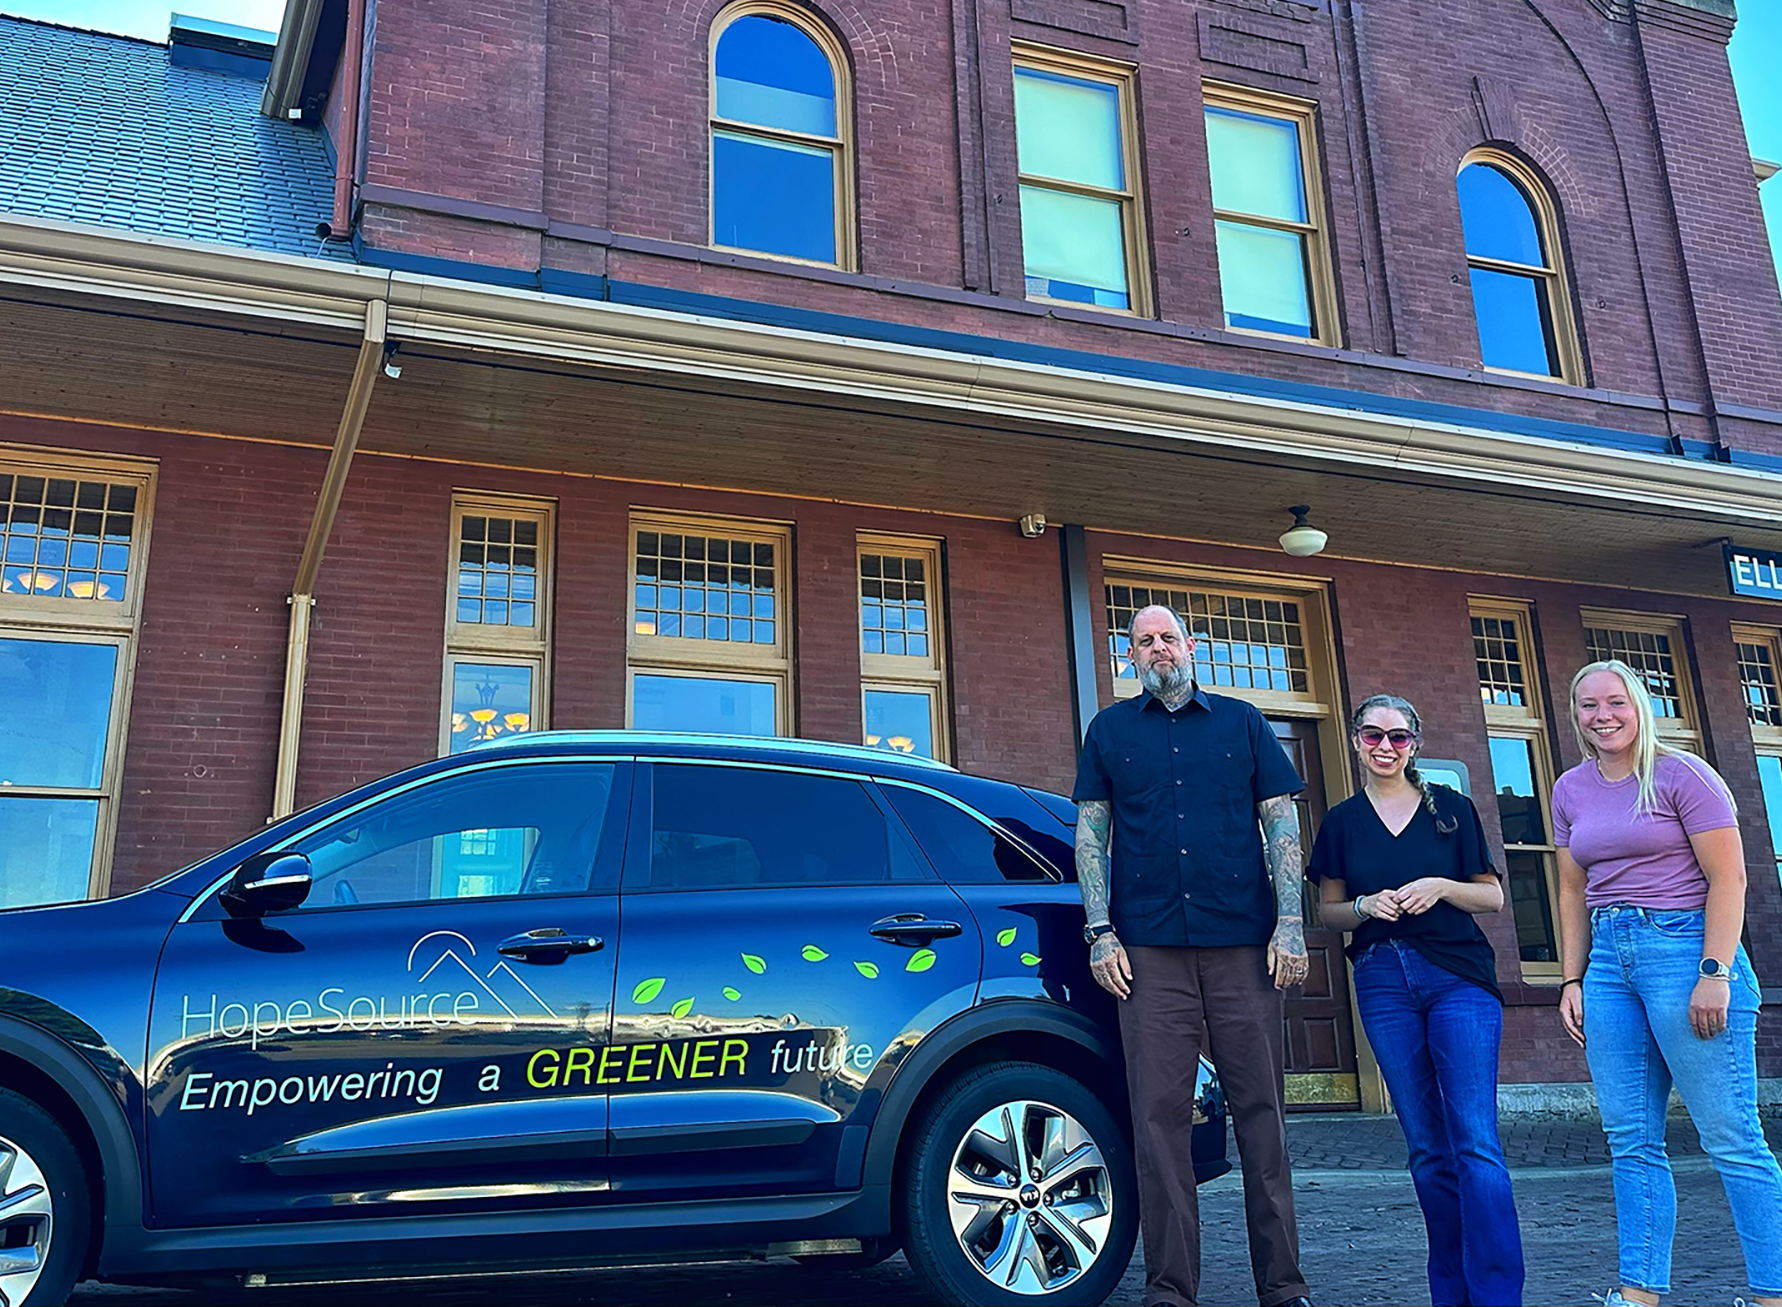 在砖砌建筑前，两名女性和一名男子站在一辆 “Hopesource” 品牌的电动汽车旁边。